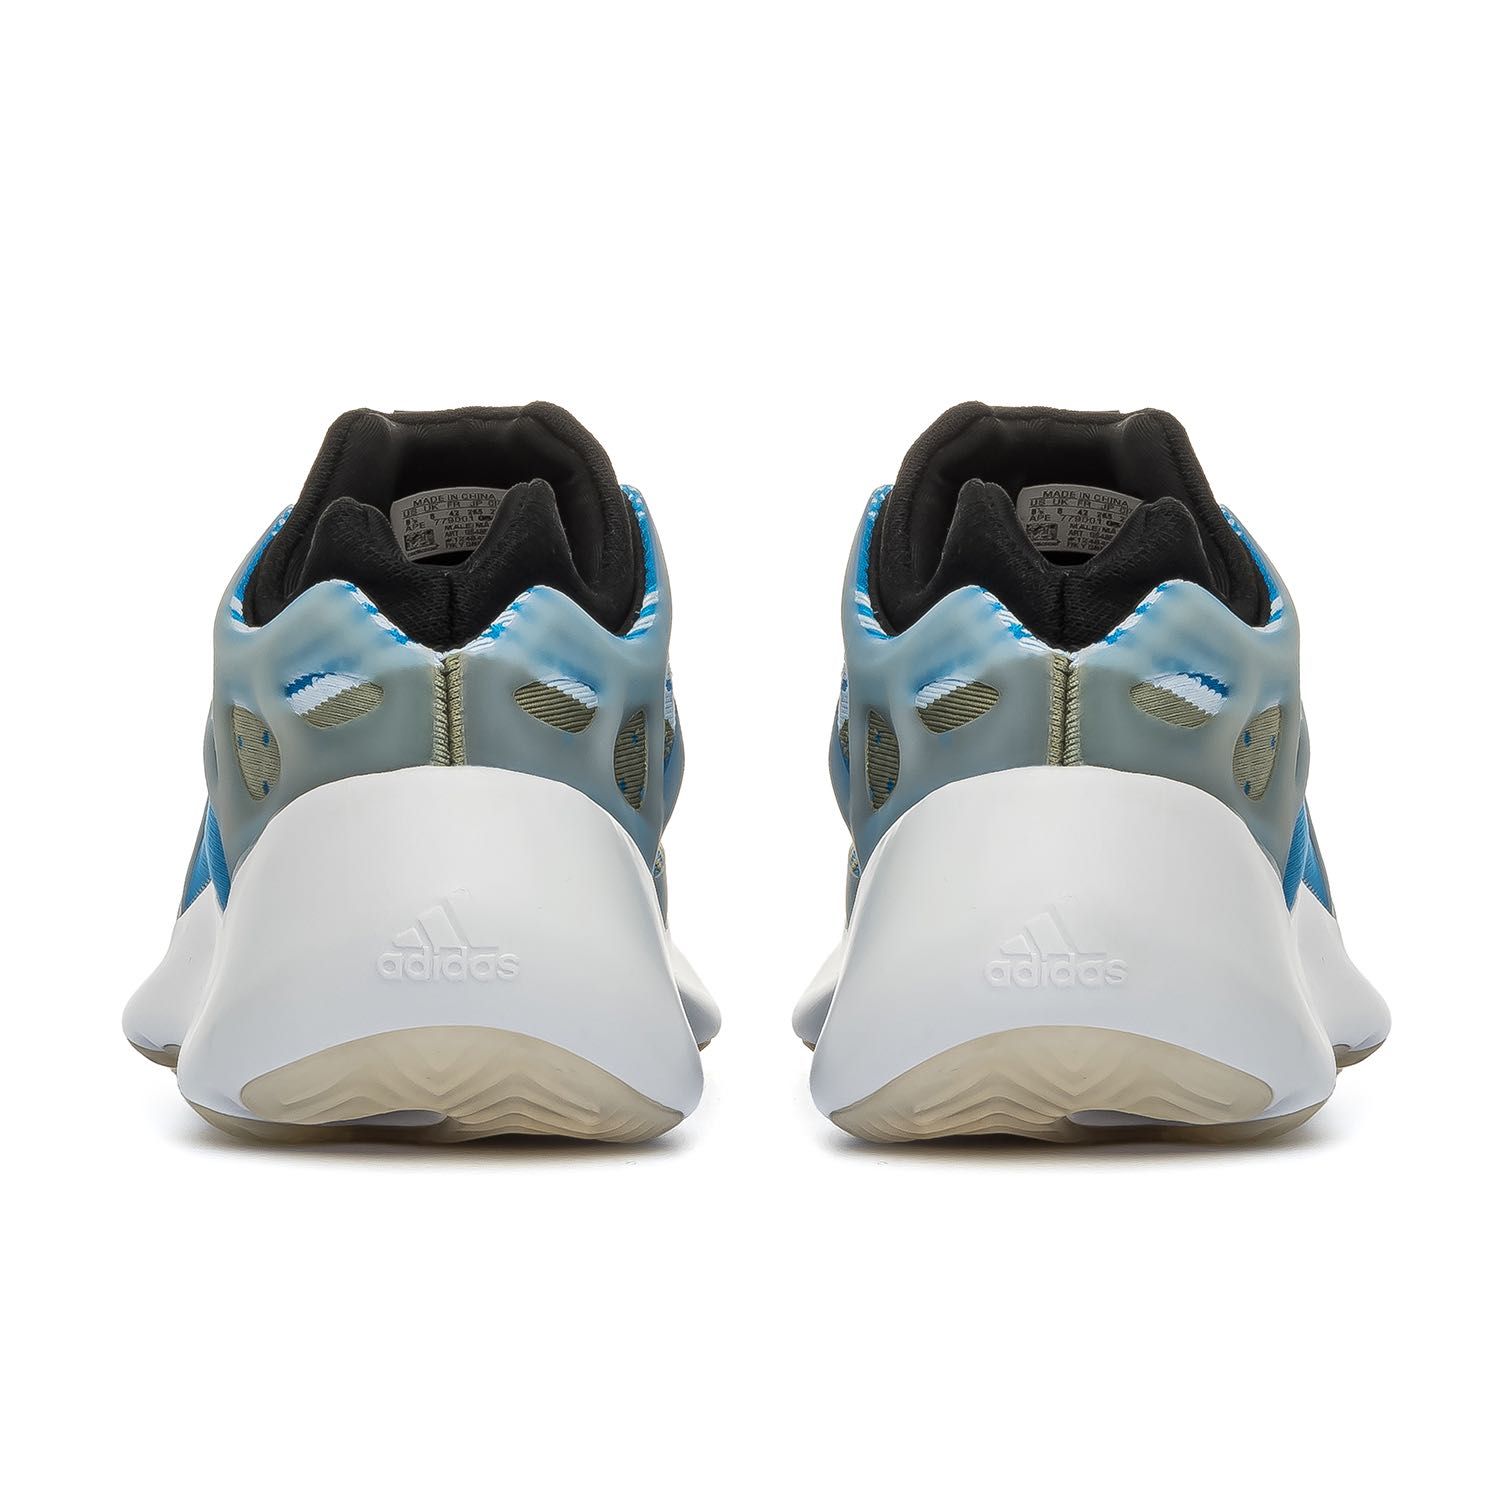 Мужские кроссовки Adidas Yeezy 700 V3 Blue. Размеры 41-45